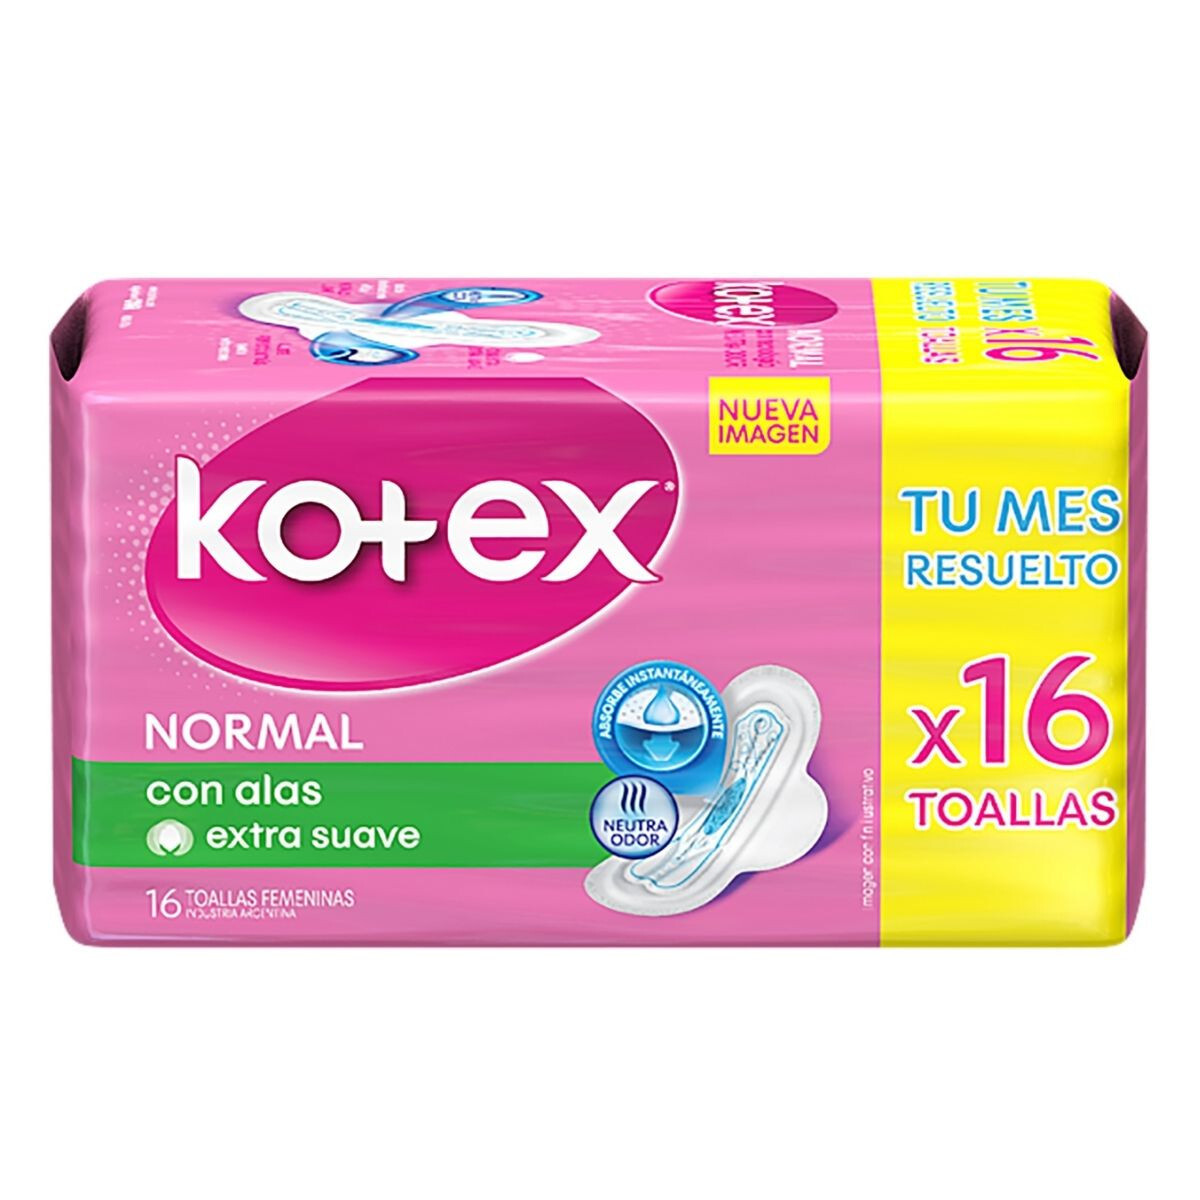 KOTEX ESENCIAL NORMAL CON ALAS X16 